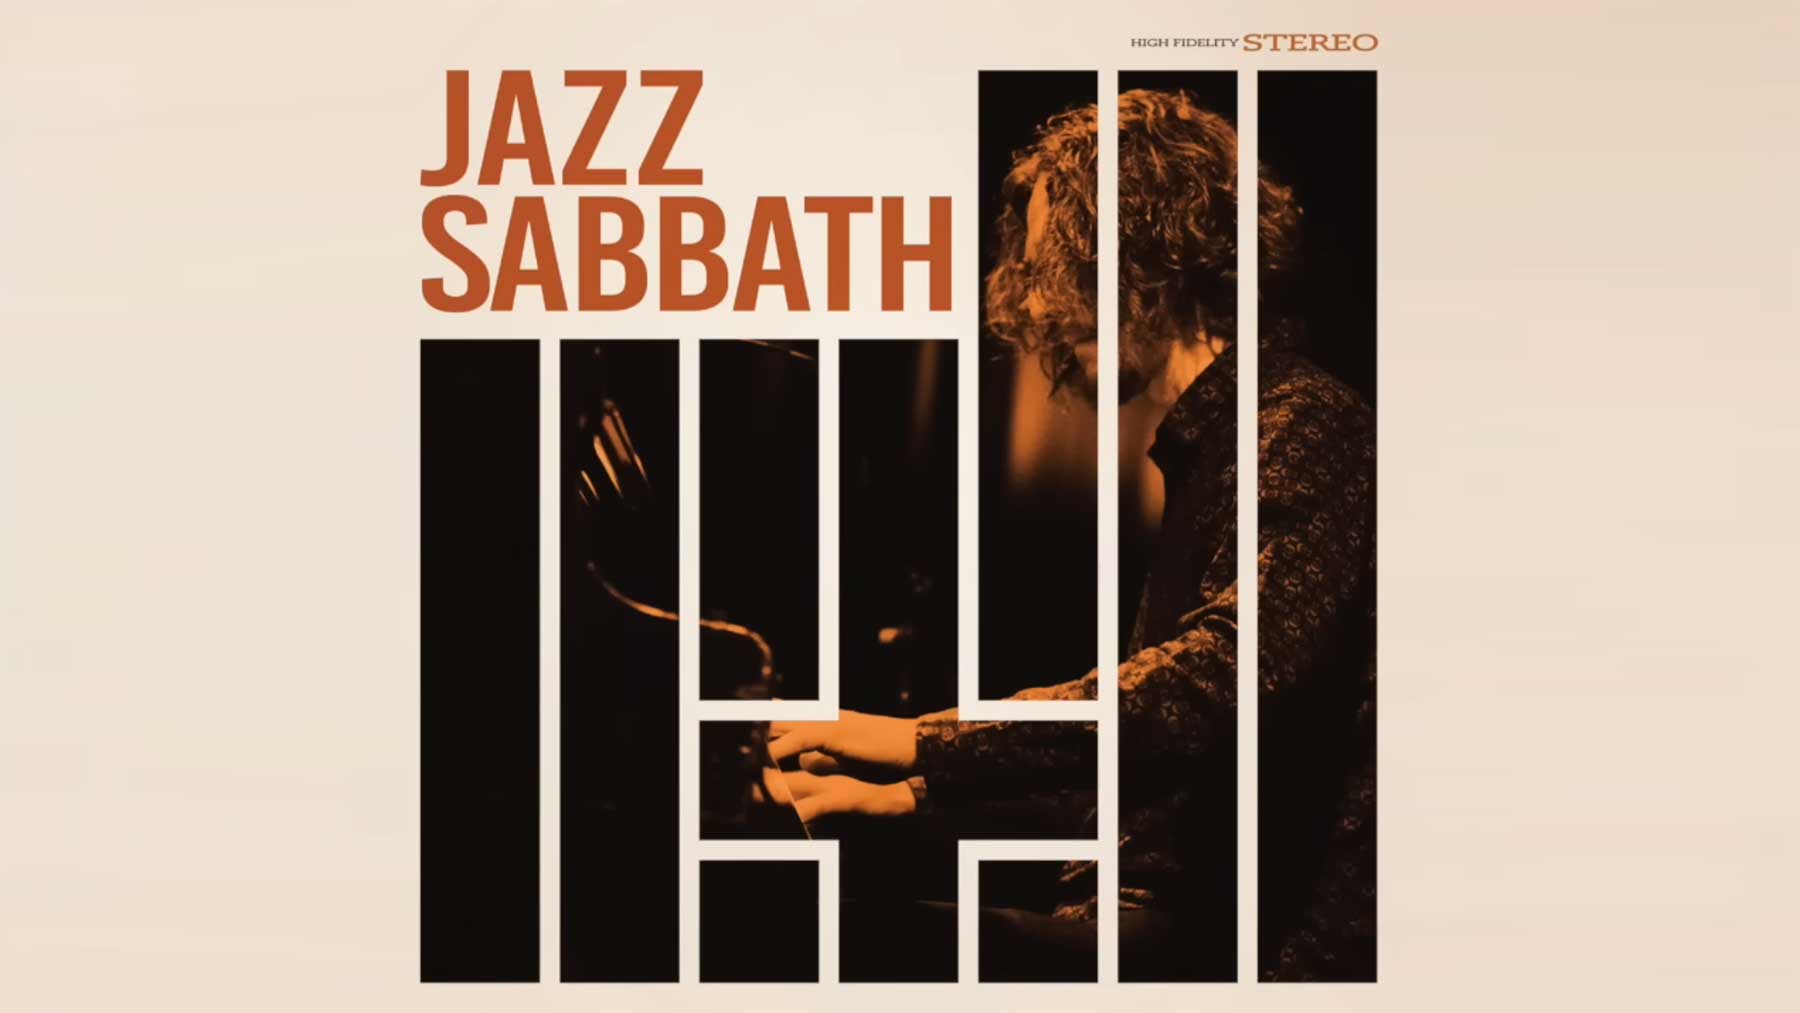 Black Sabbath als Jazz-Musik gecovert Jazz-Sabbath-black-cover-album 